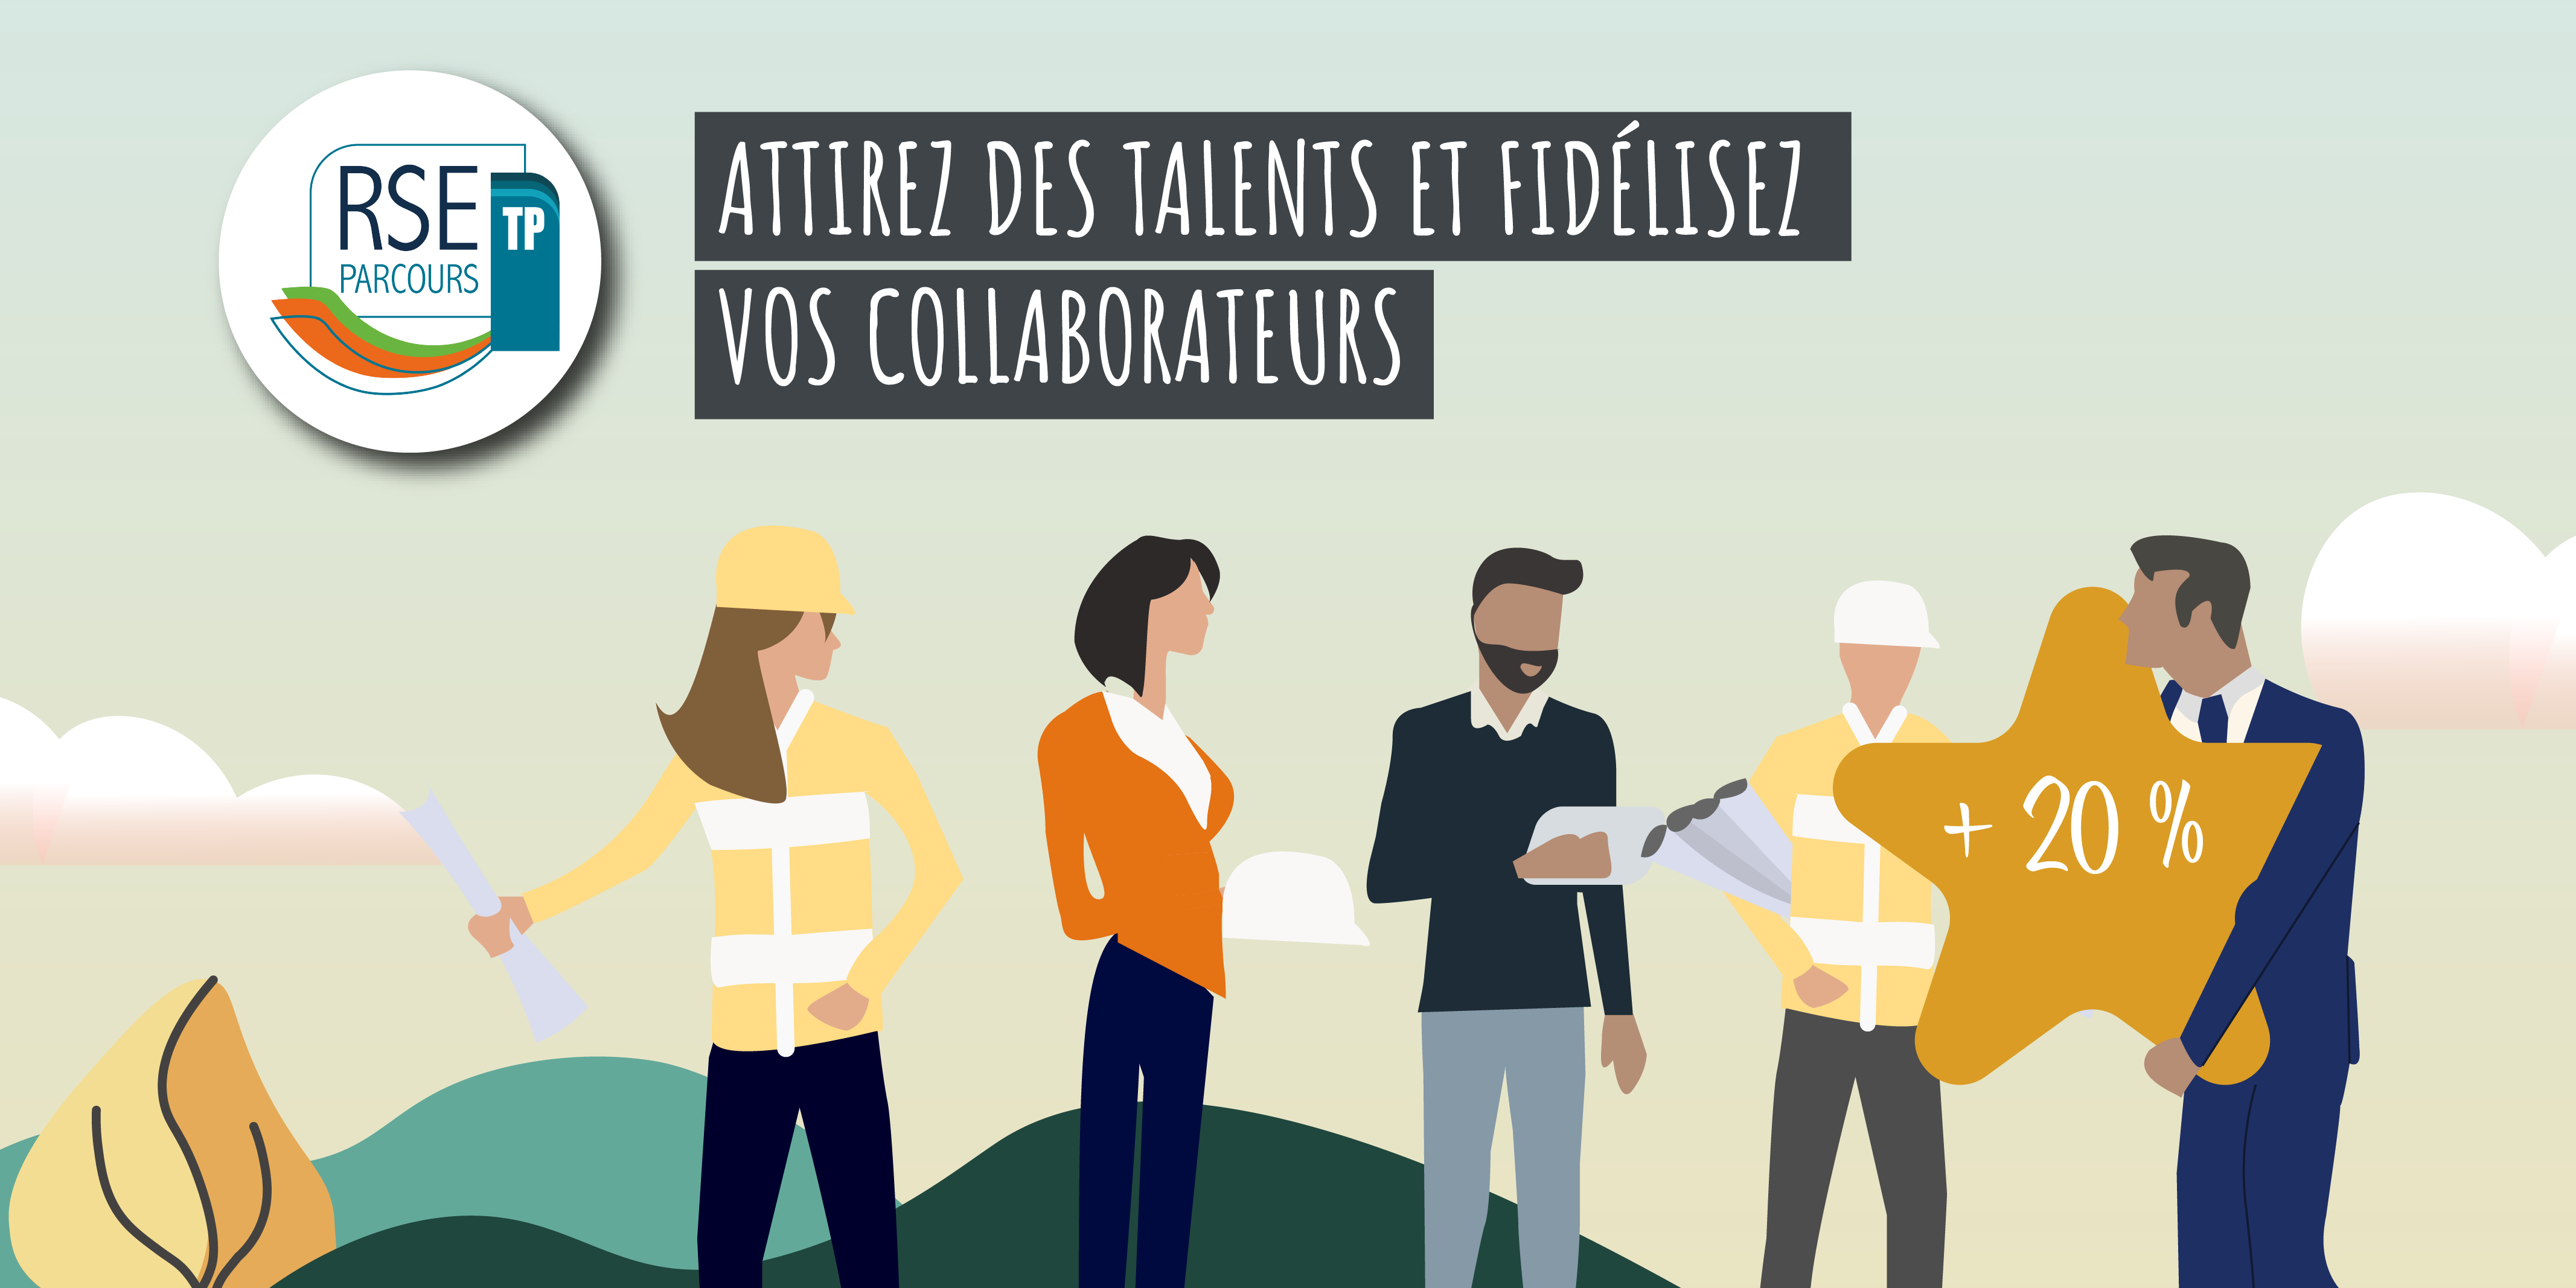 attirer_les_talents_et_fideliser_vos_collaborateurs.png